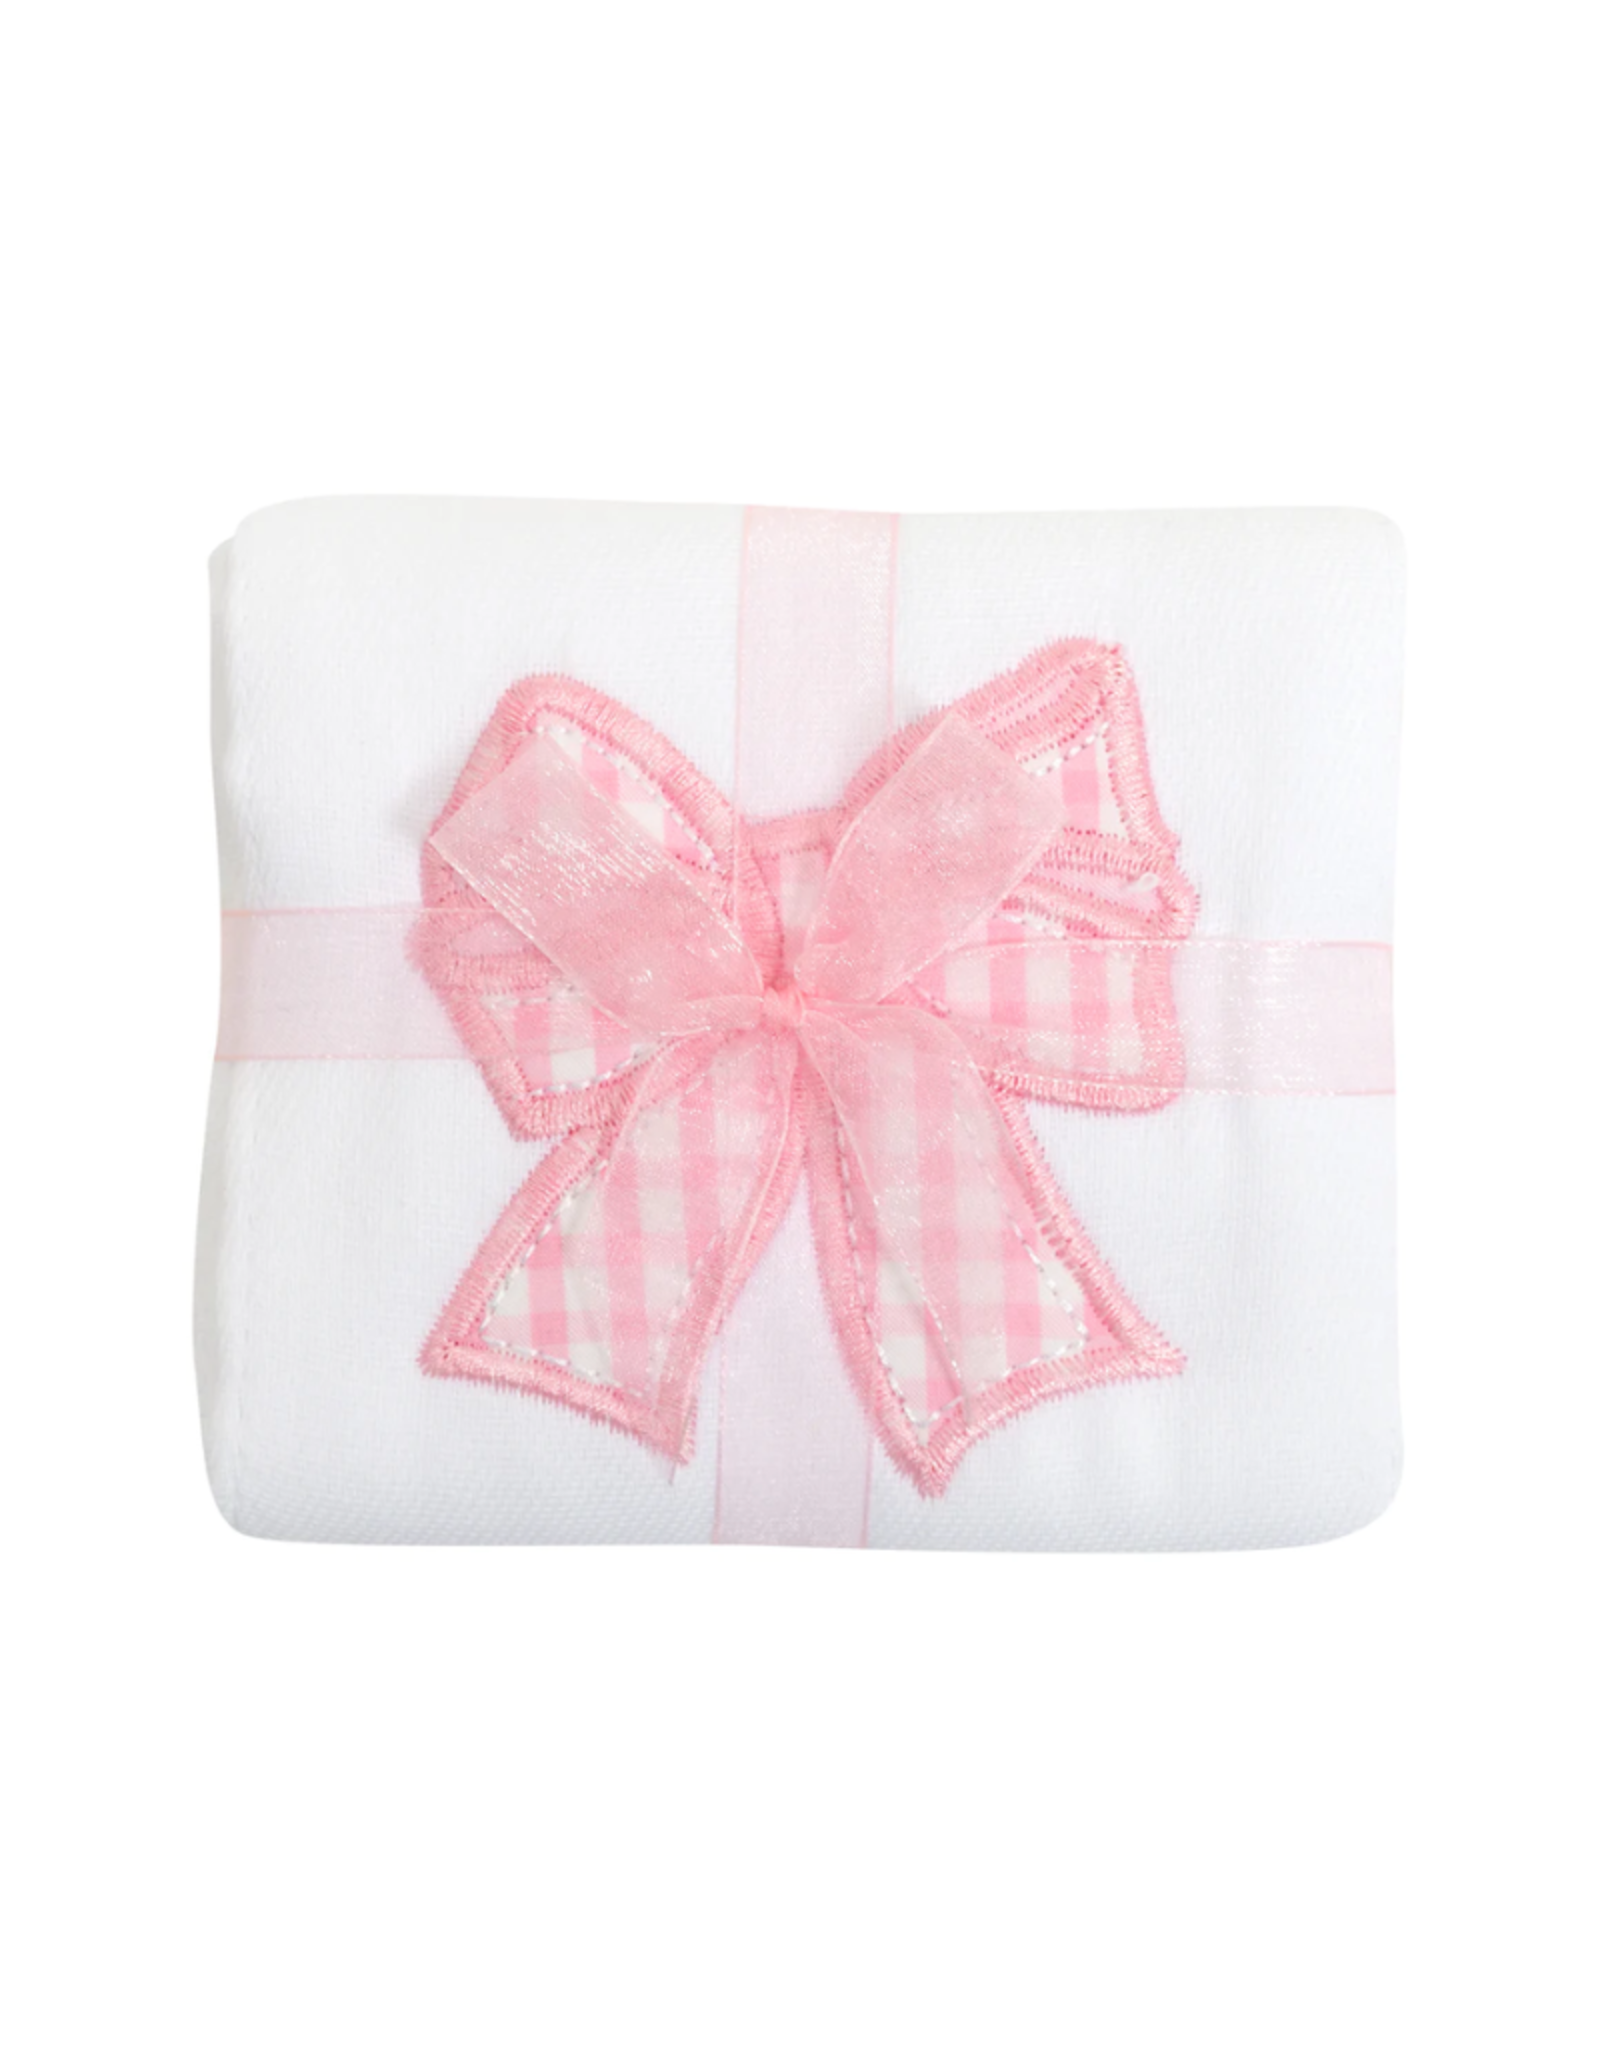 3 Marthas Burp Cloth Pink Bow Applique